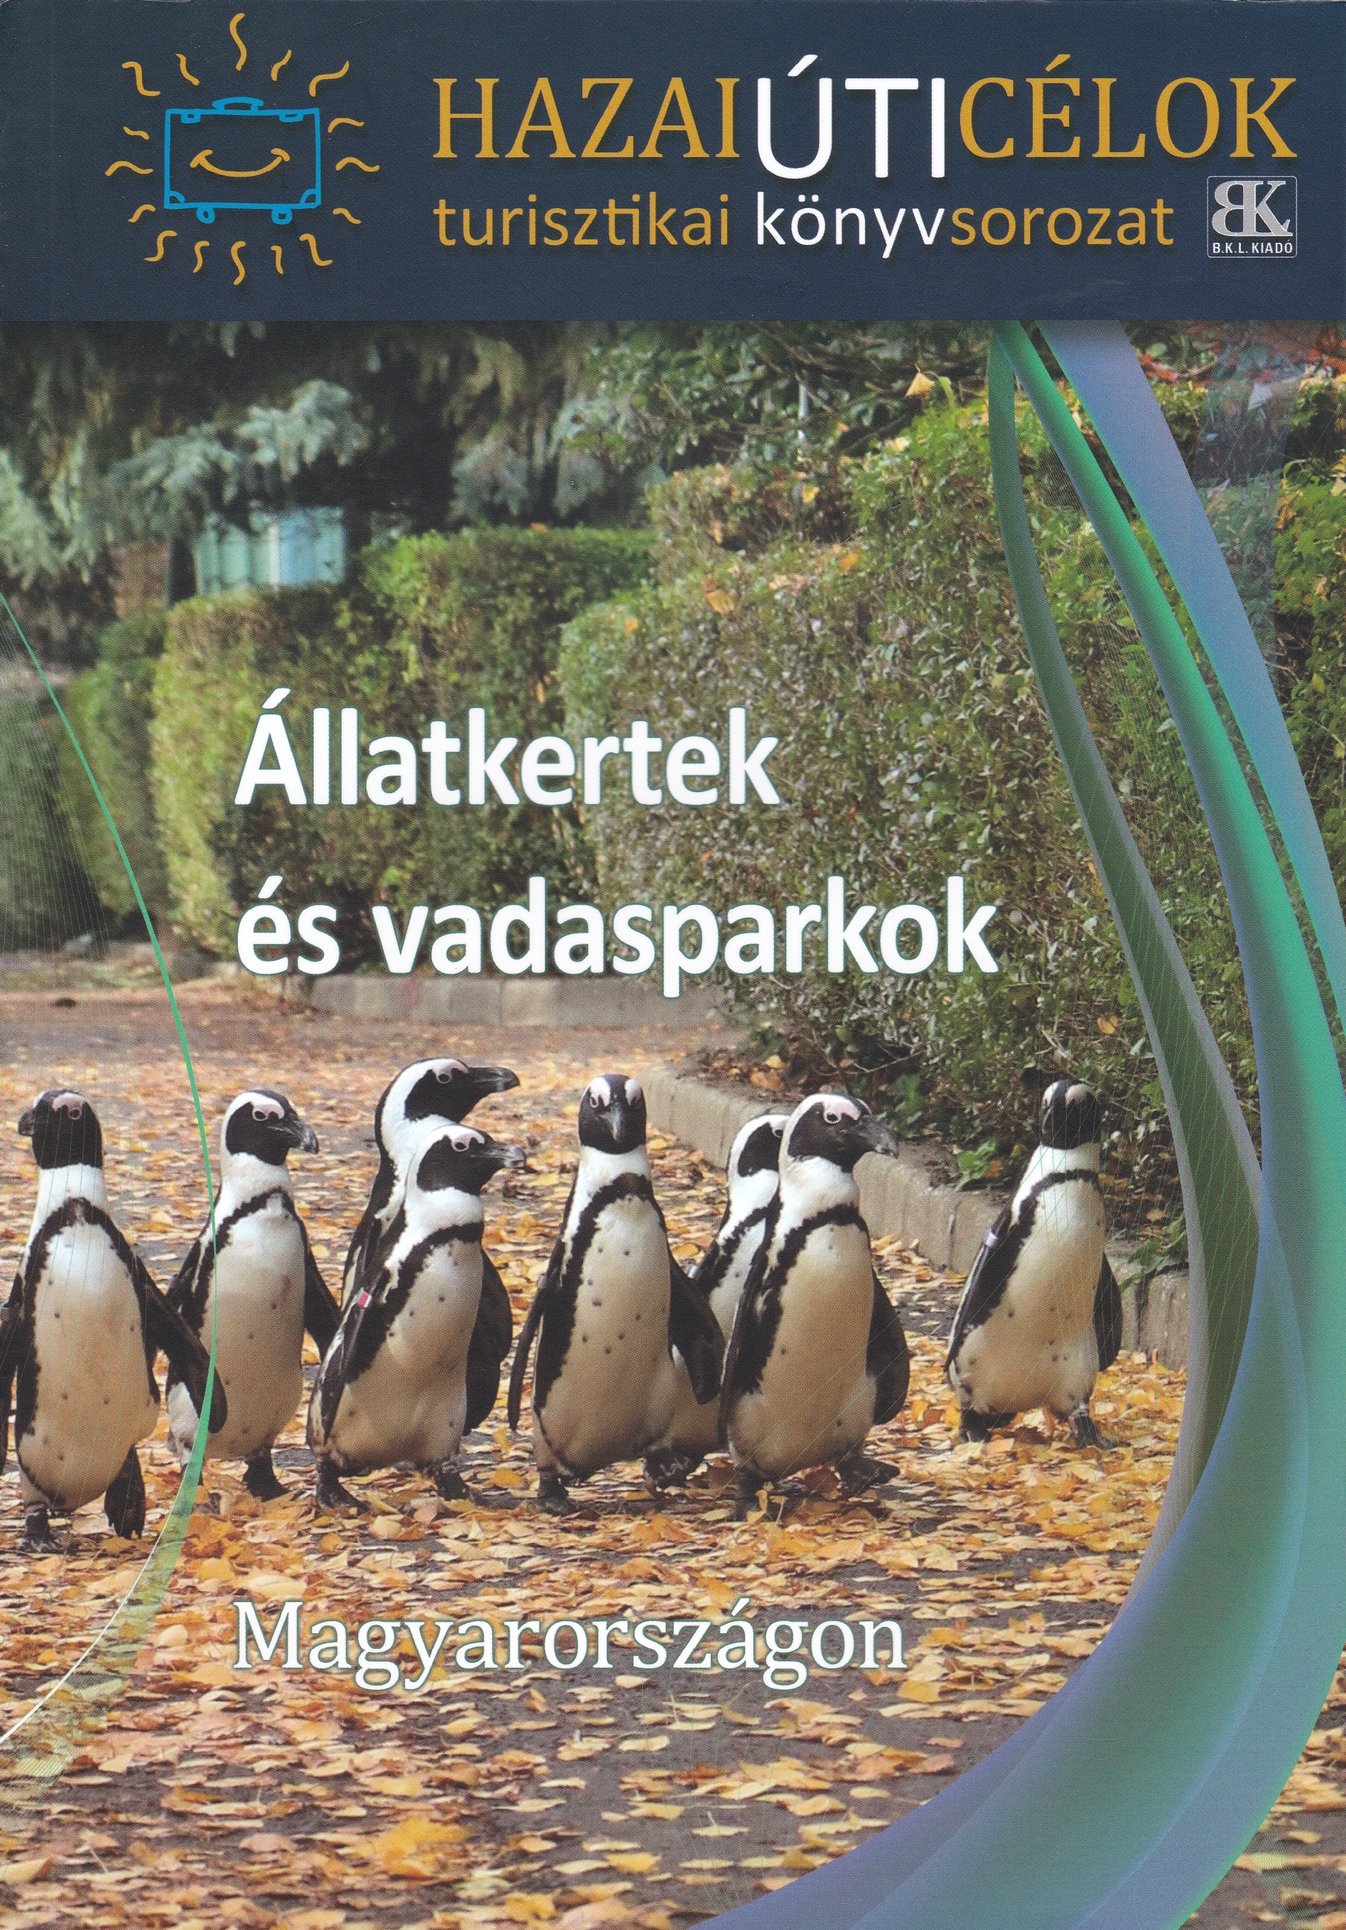 Hazai úti célok 10. - Állatkertek és vadasparkok Magyarországon (Rippl-Rónai Múzeum CC BY-NC-ND)